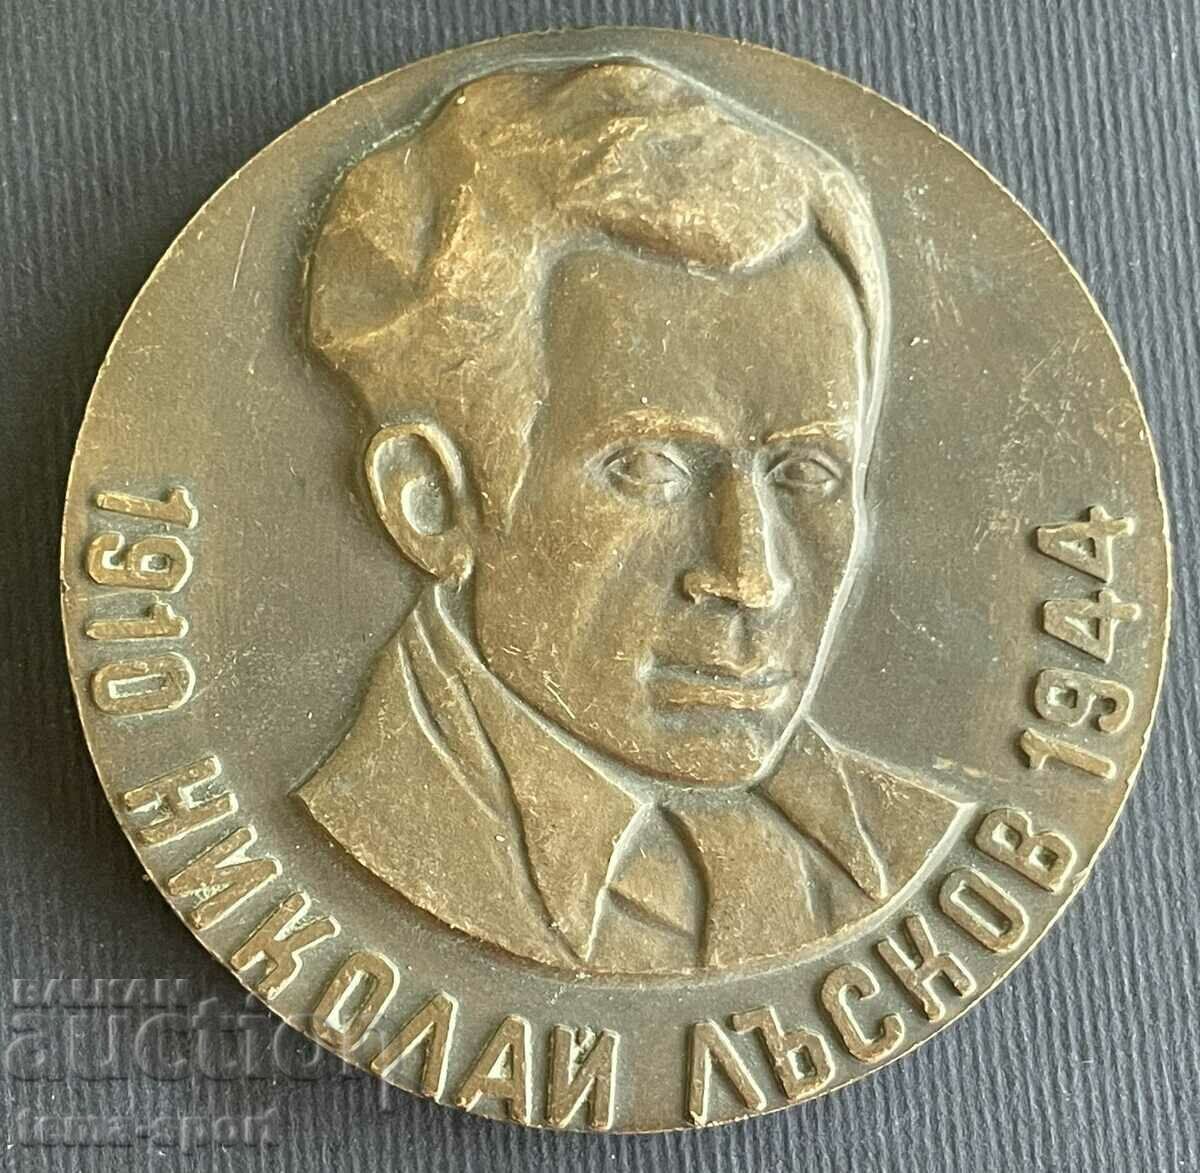 2 Bulgaria plaque Nikola Luskov DFS Yambol contribution Physikulturat